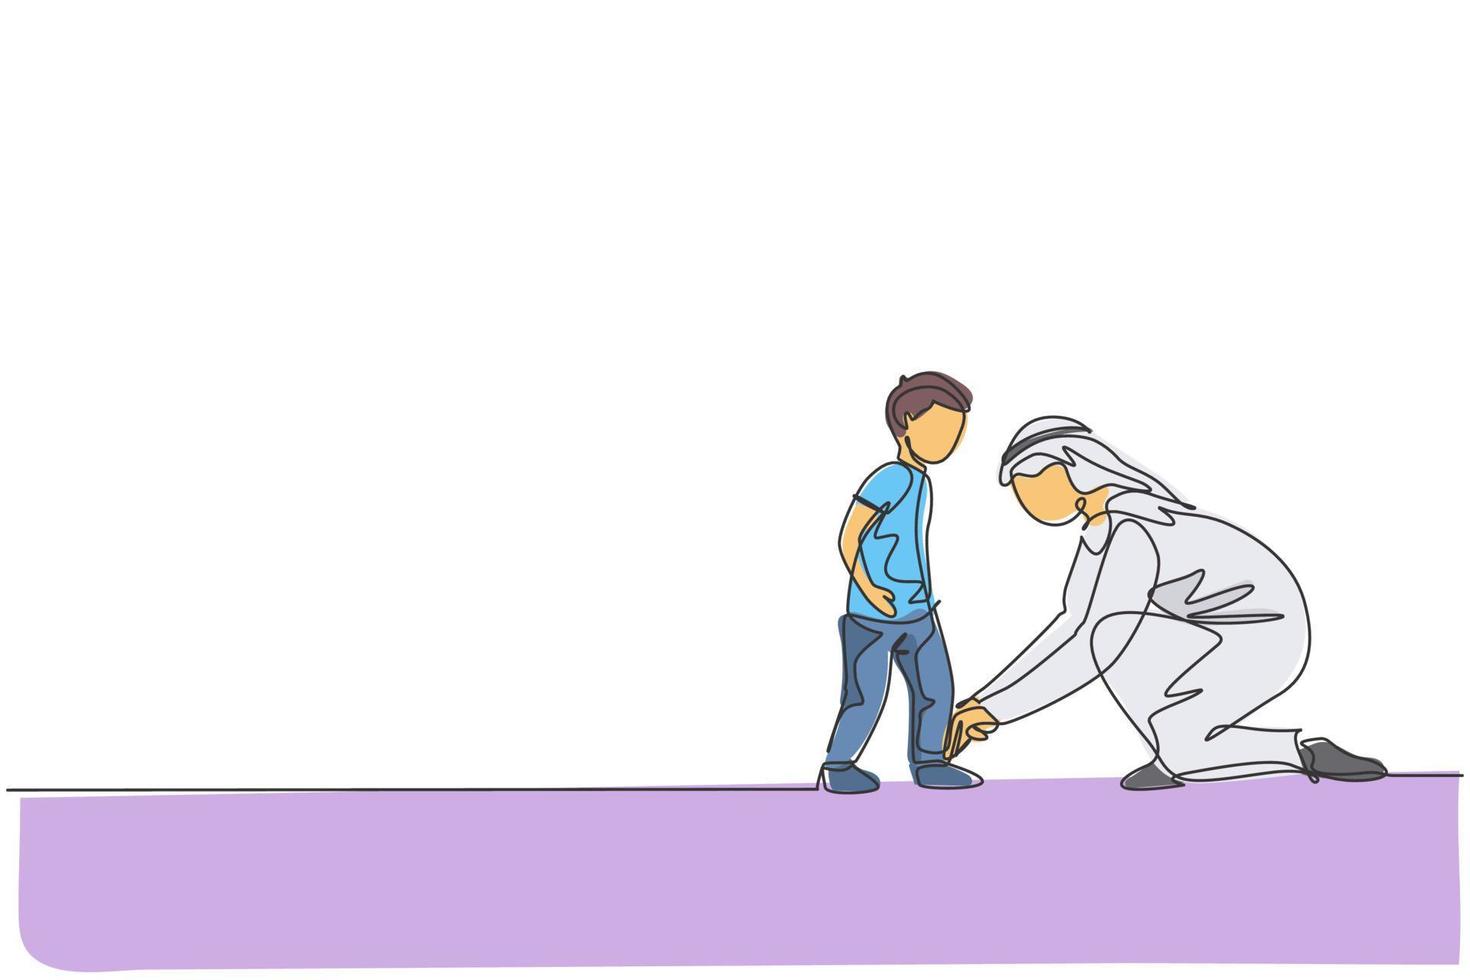 um desenho de linha contínua do jovem pai árabe ajuda o filho a amarrar o cadarço antes de ir para a escola. conceito de família amorosa muçulmana islâmica feliz. ilustração em vetor desenho desenho de linha única